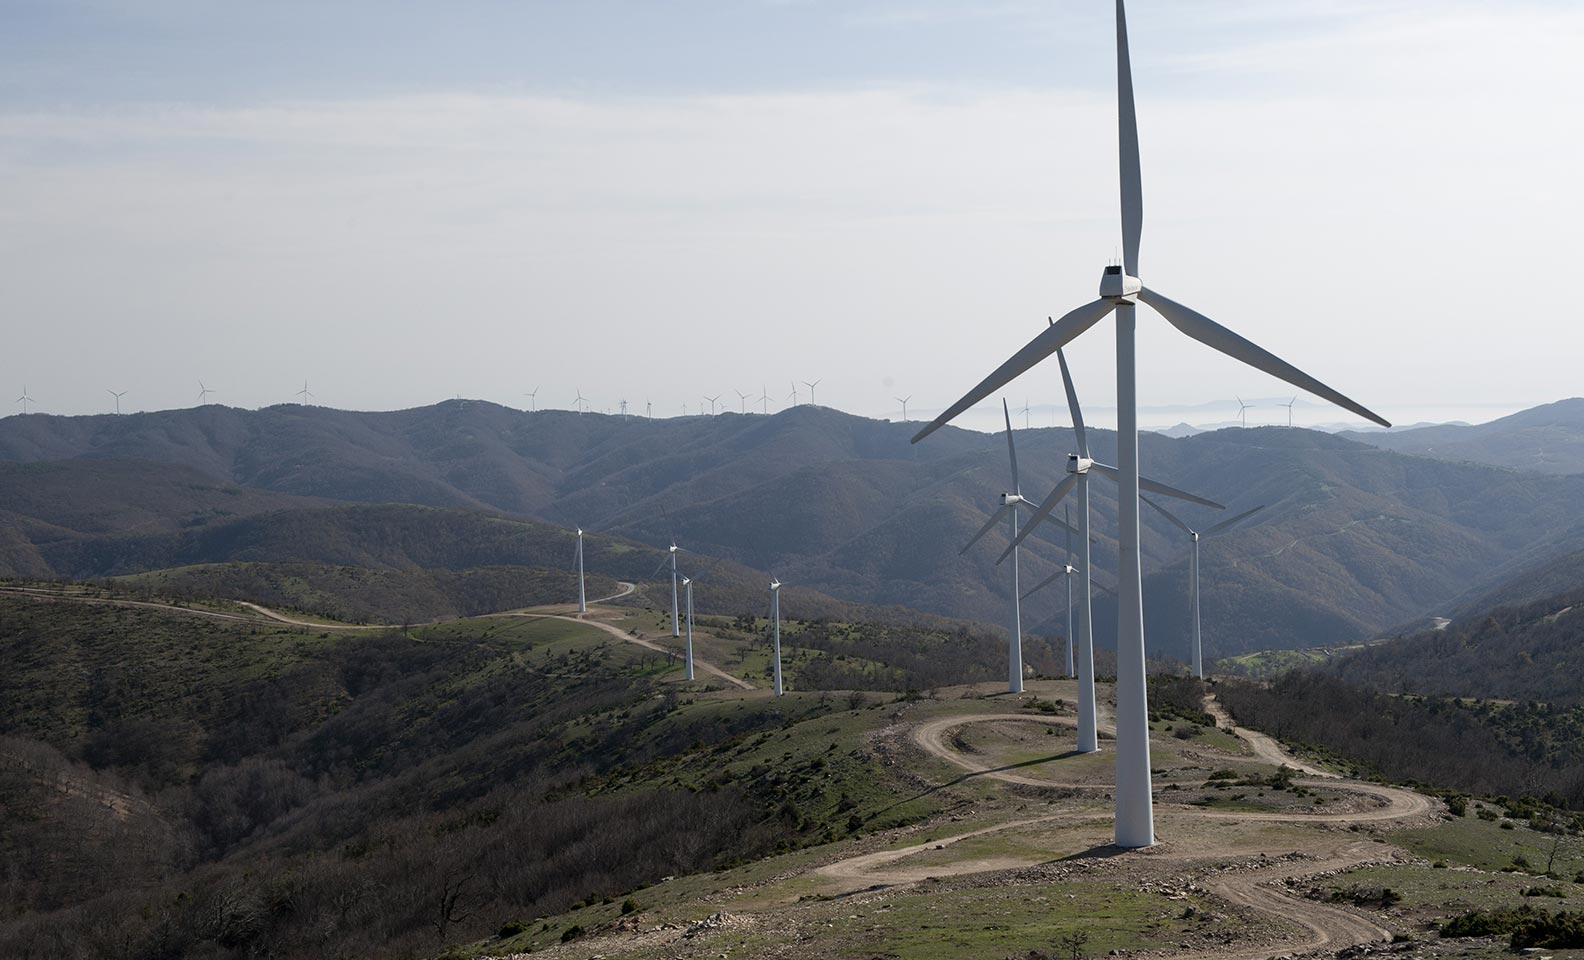 Série de pás de turbinas eólicas nas montanhas